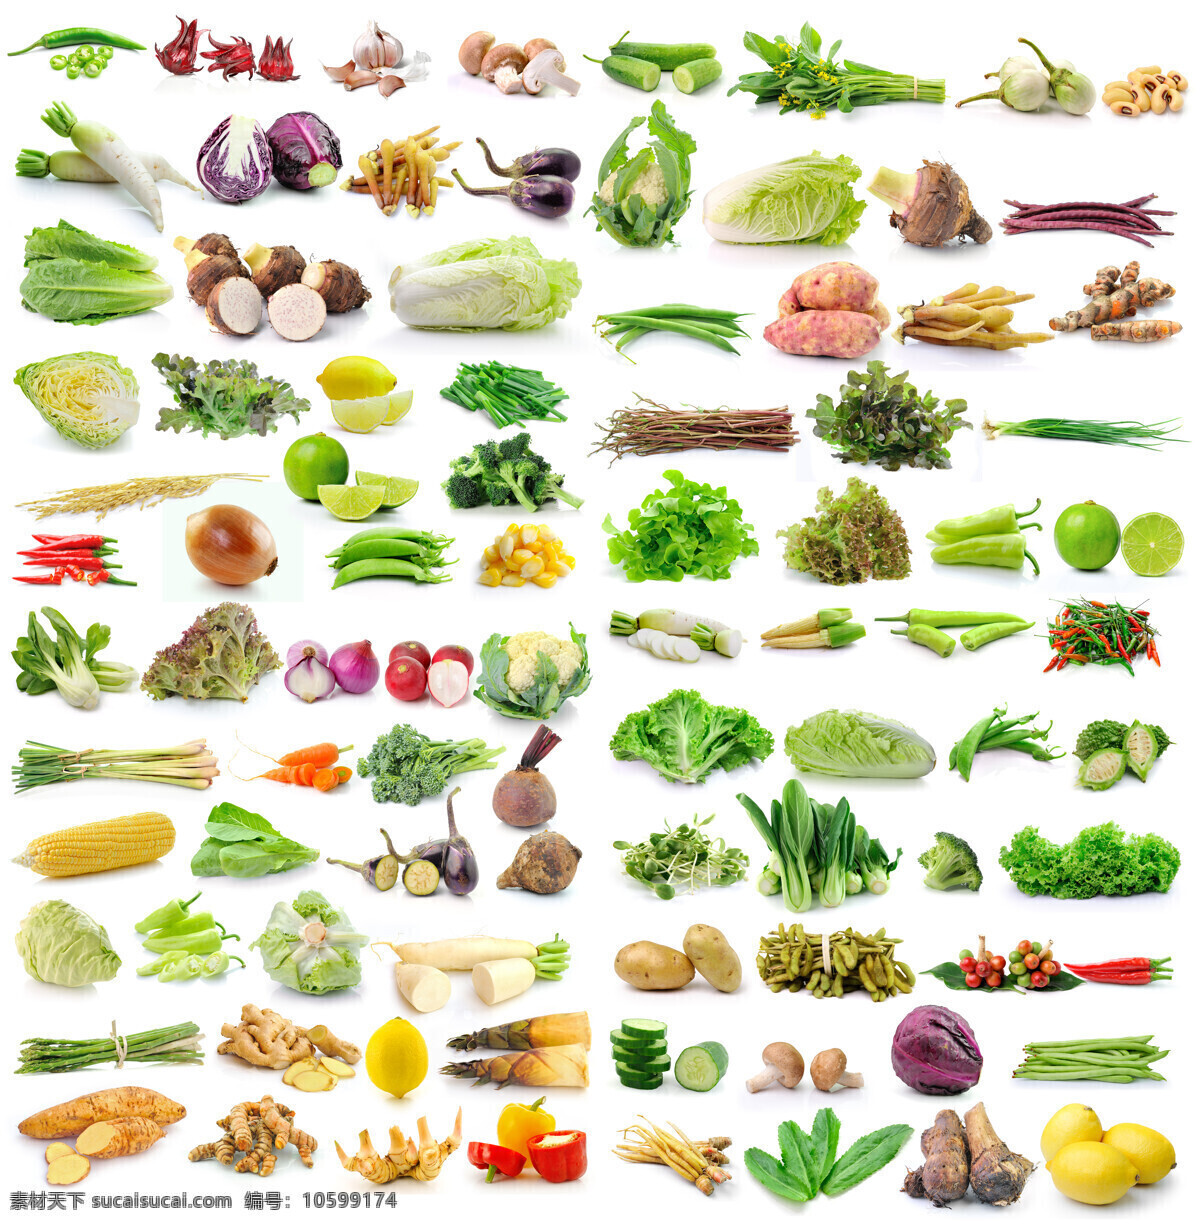 蔬菜水果集合 蔬菜水果 水果 蔬菜 新鲜蔬菜 有机蔬菜 辣椒 西红柿 青瓜 胡萝卜香蕉 芹菜 芦笋 生物世界